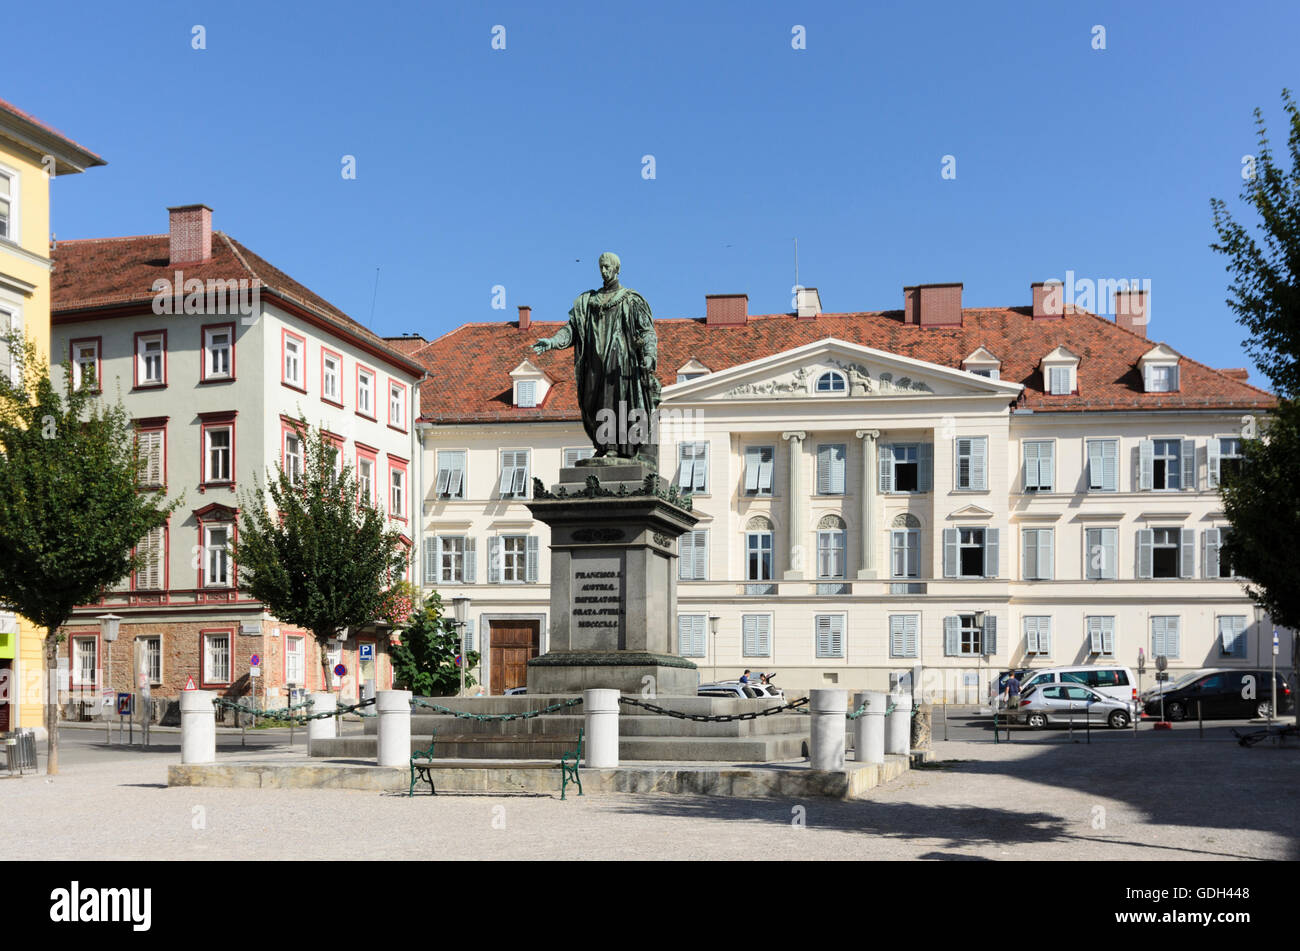 Graz : la Place de la liberté avec la personnalité de l'empereur François I. monument, l'Autriche, Styrie, Carinthie, Région Graz Banque D'Images